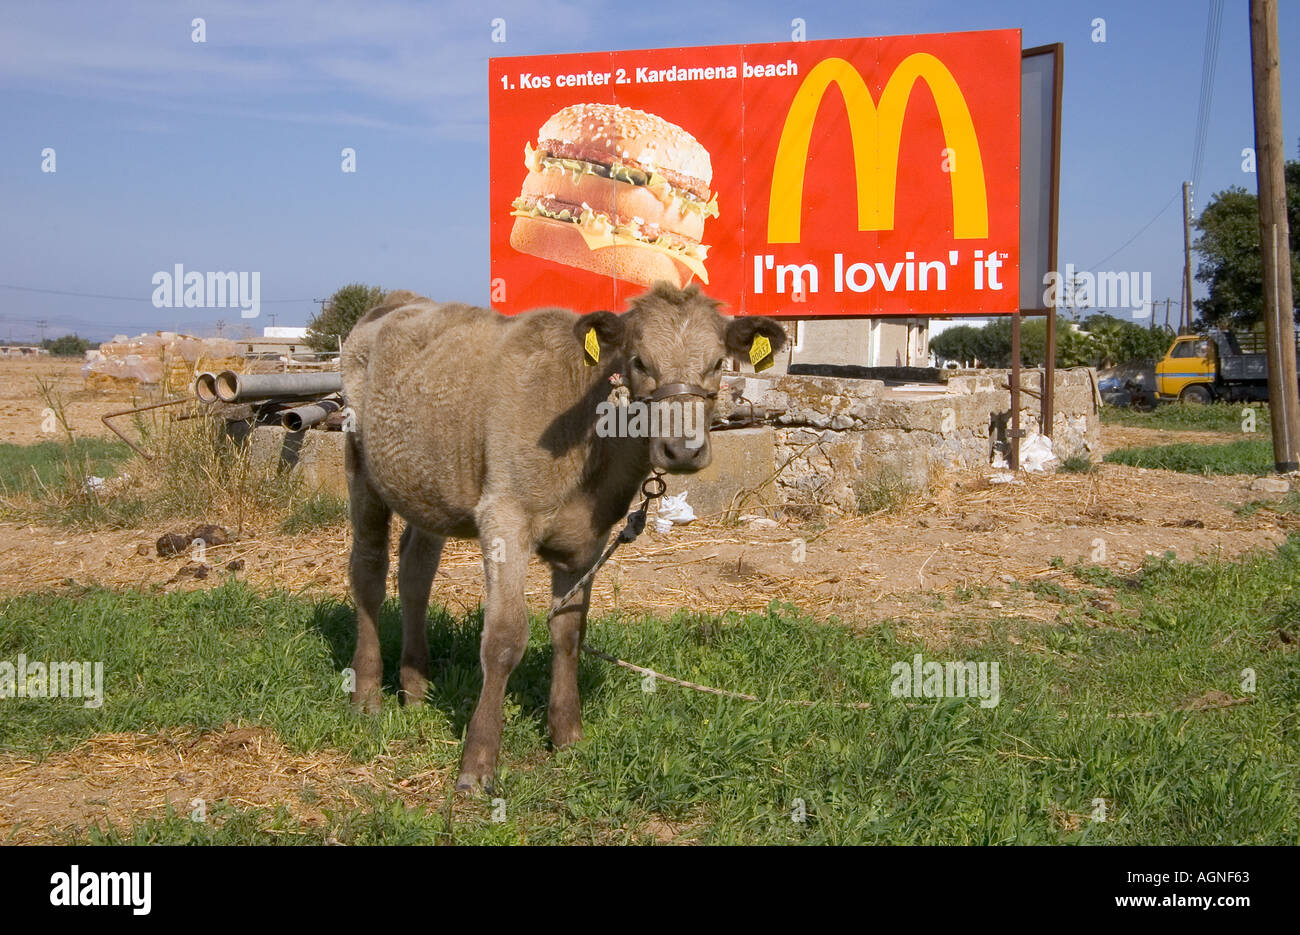 dh MacDonalds signe publicitaire KOS ISLAND GRÈCE Tecaped Calf im lovin il mcdonald's publicité conseil vache dans le terrain lié publicité hamburger Banque D'Images